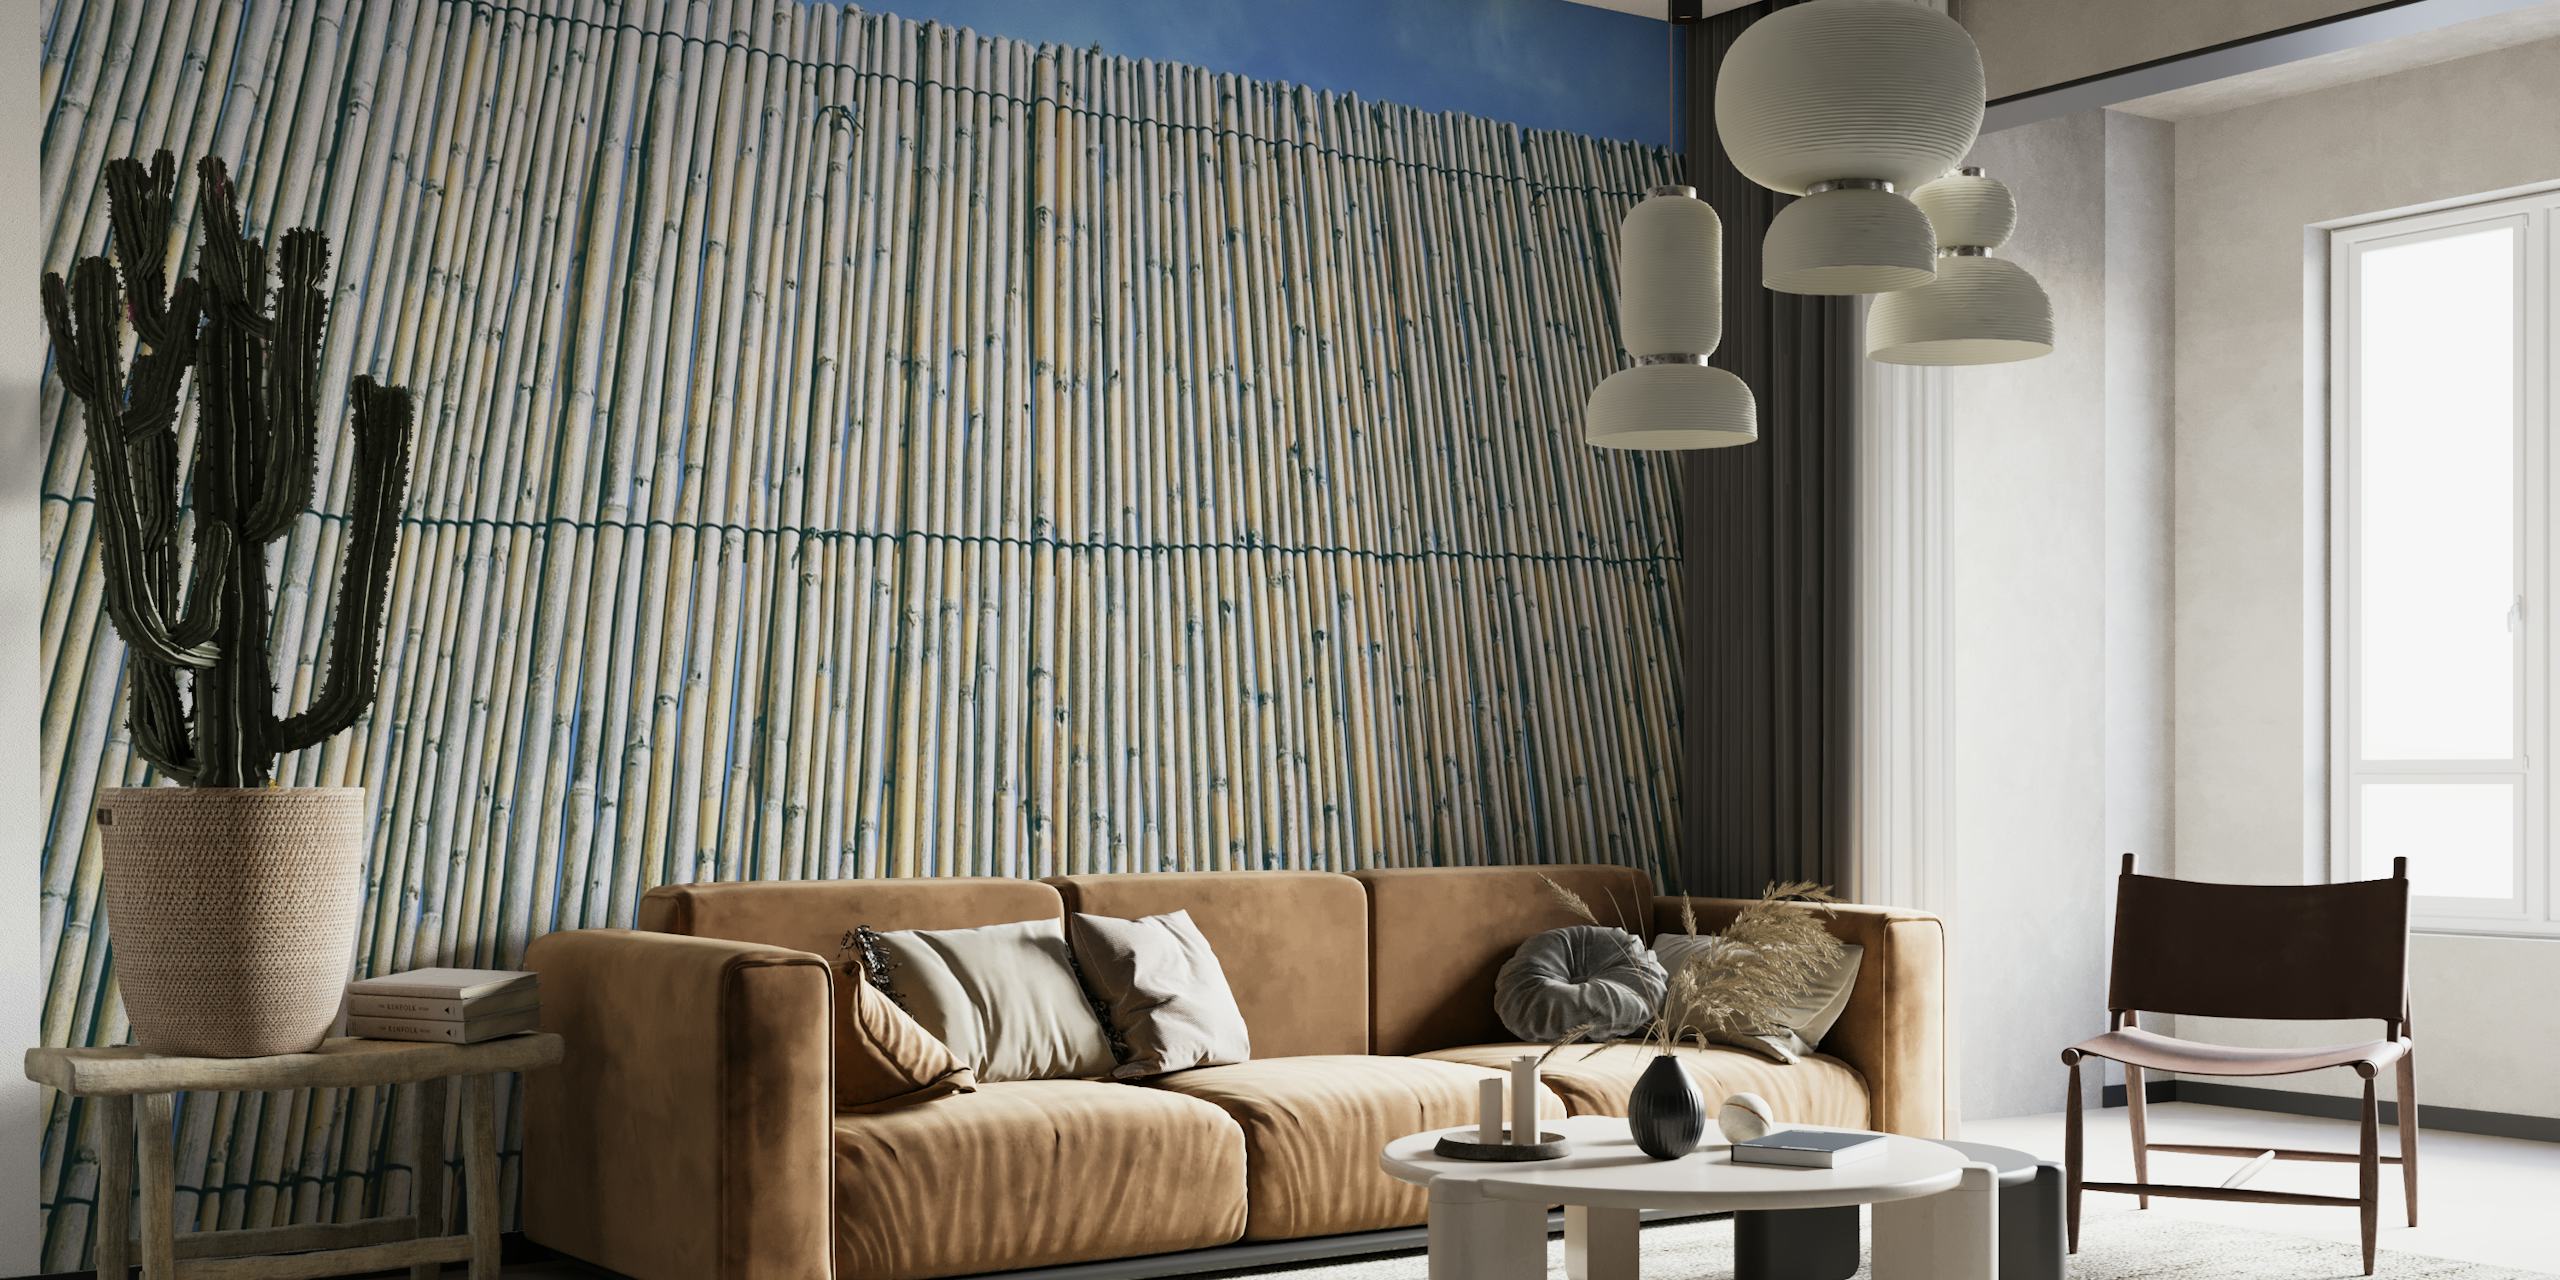 Mural de pared de bambú desgastado que muestra patrones de bambú texturizados para la decoración del hogar